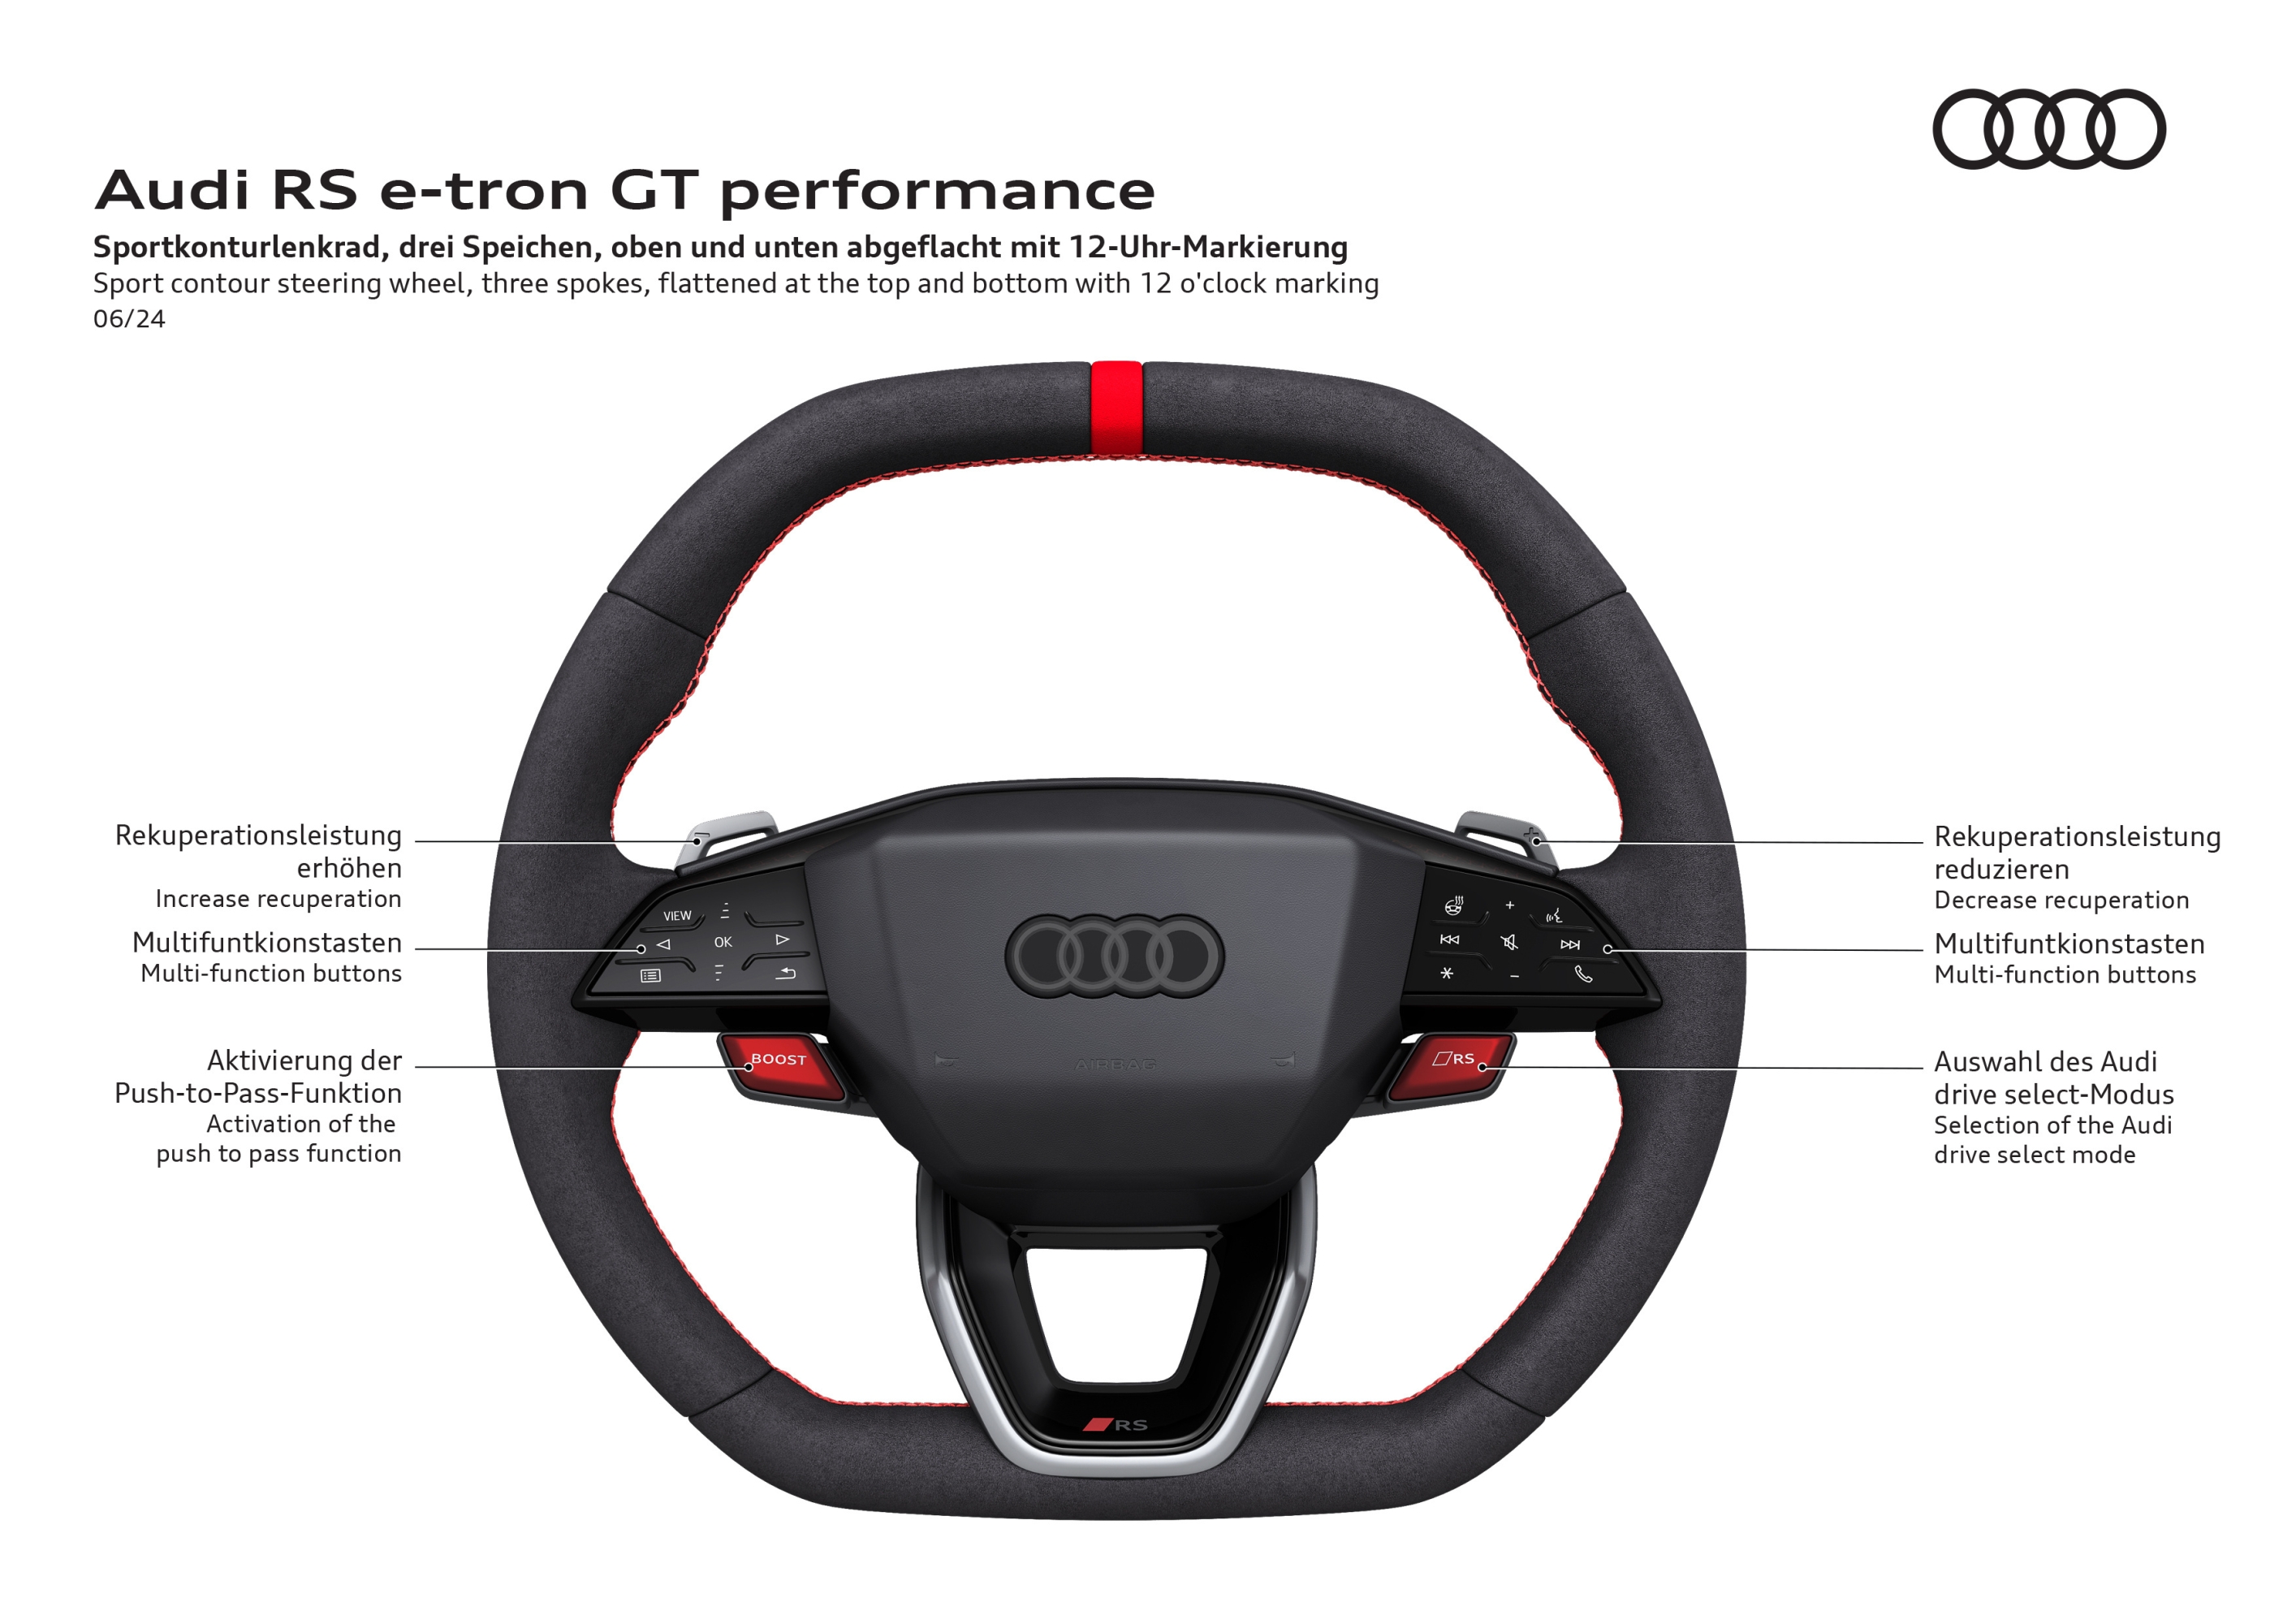 Performances de l’Audi RS e-tron GT